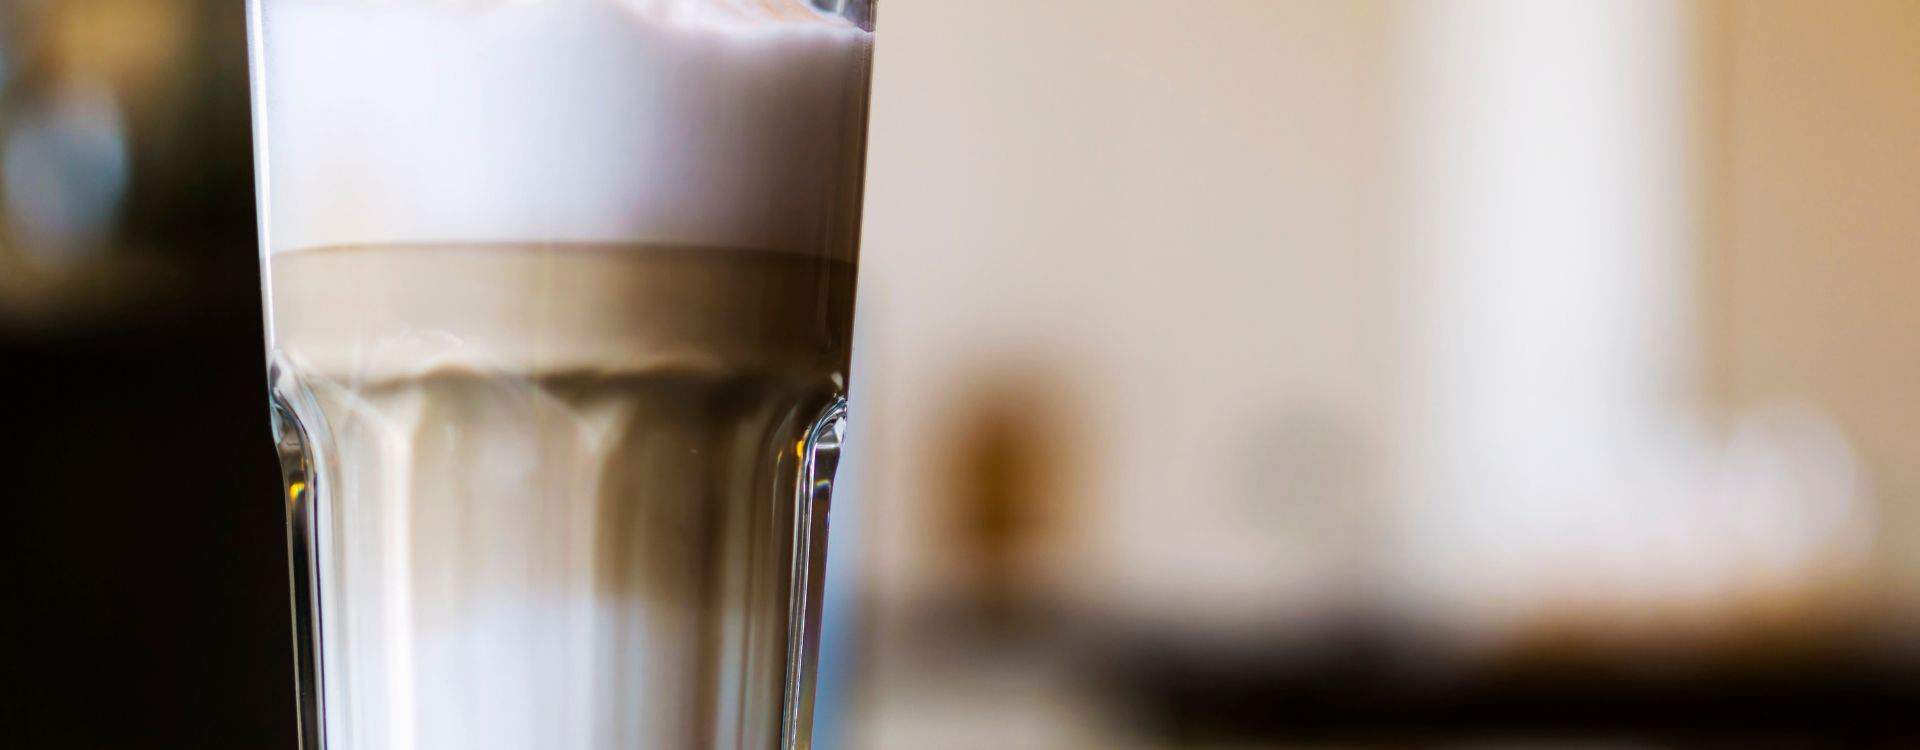 Hoe maak je een perfecte latte macchiato?